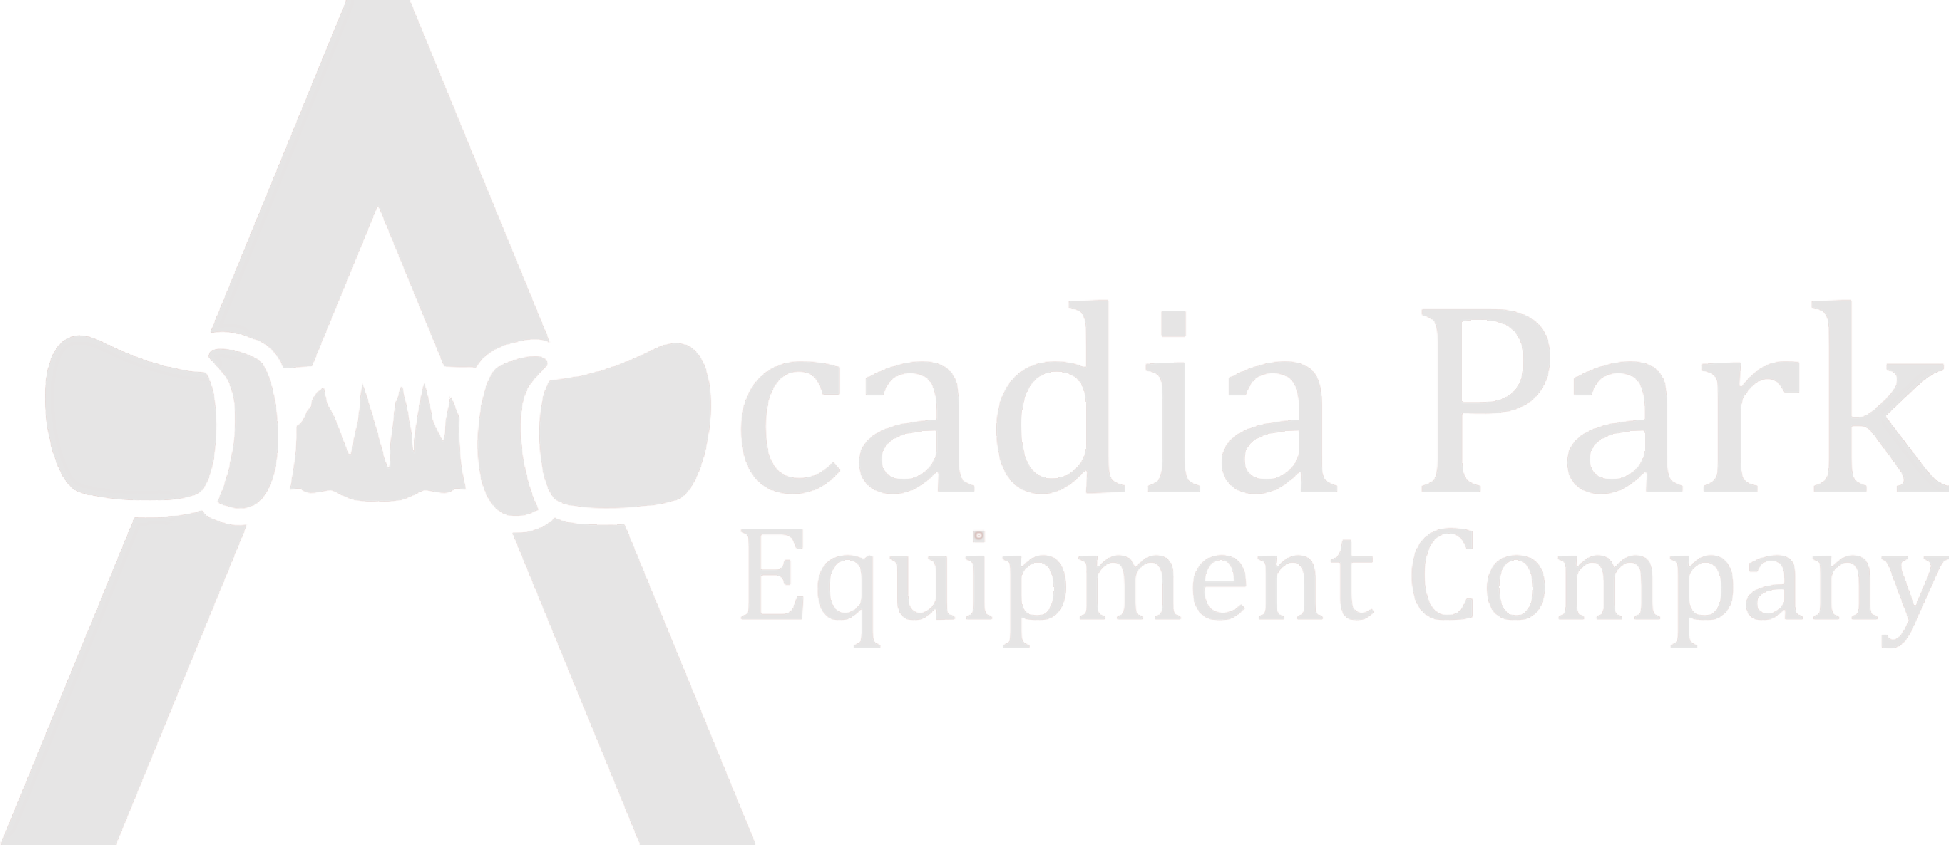 Acadia Park Equipment Company Logo